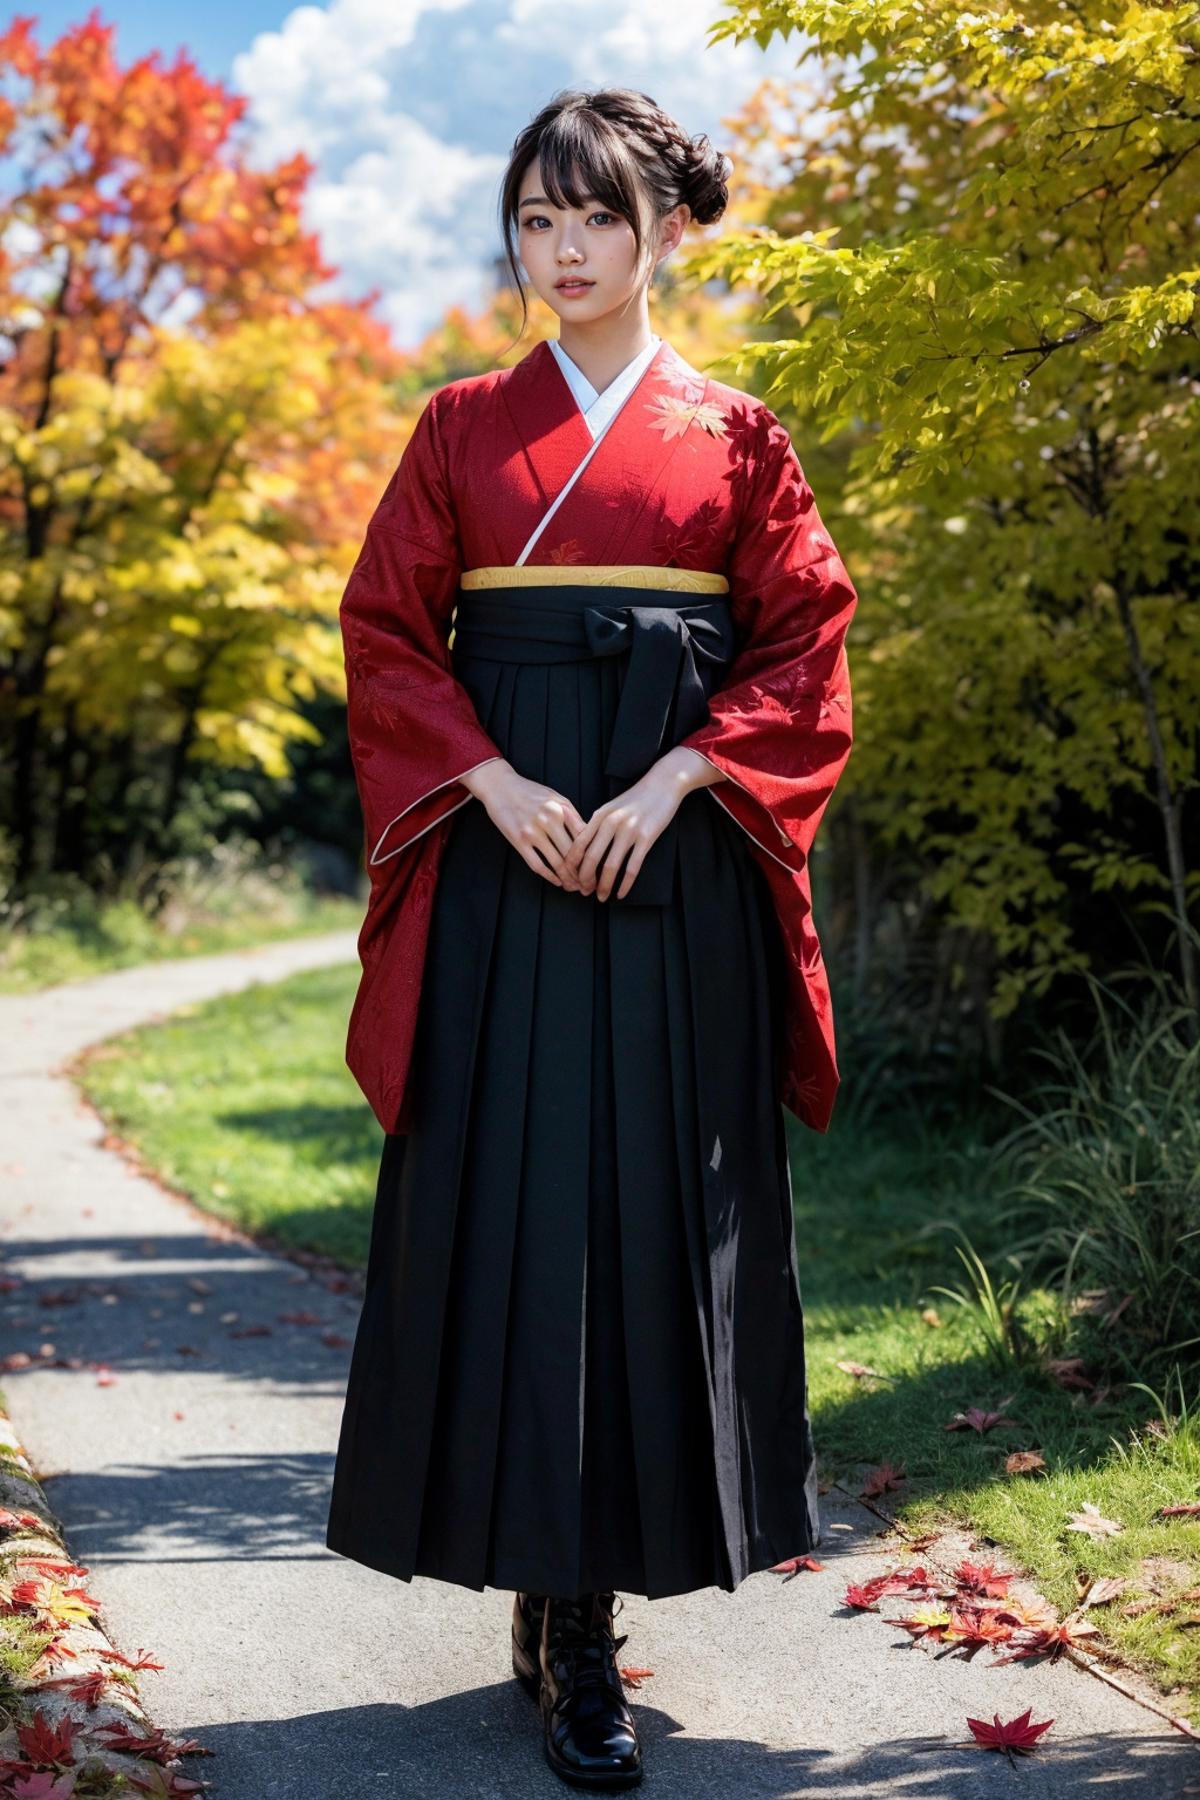 袴少女hakama girl 和服裤裙hakama skirt - v1.0 Review | Civitai